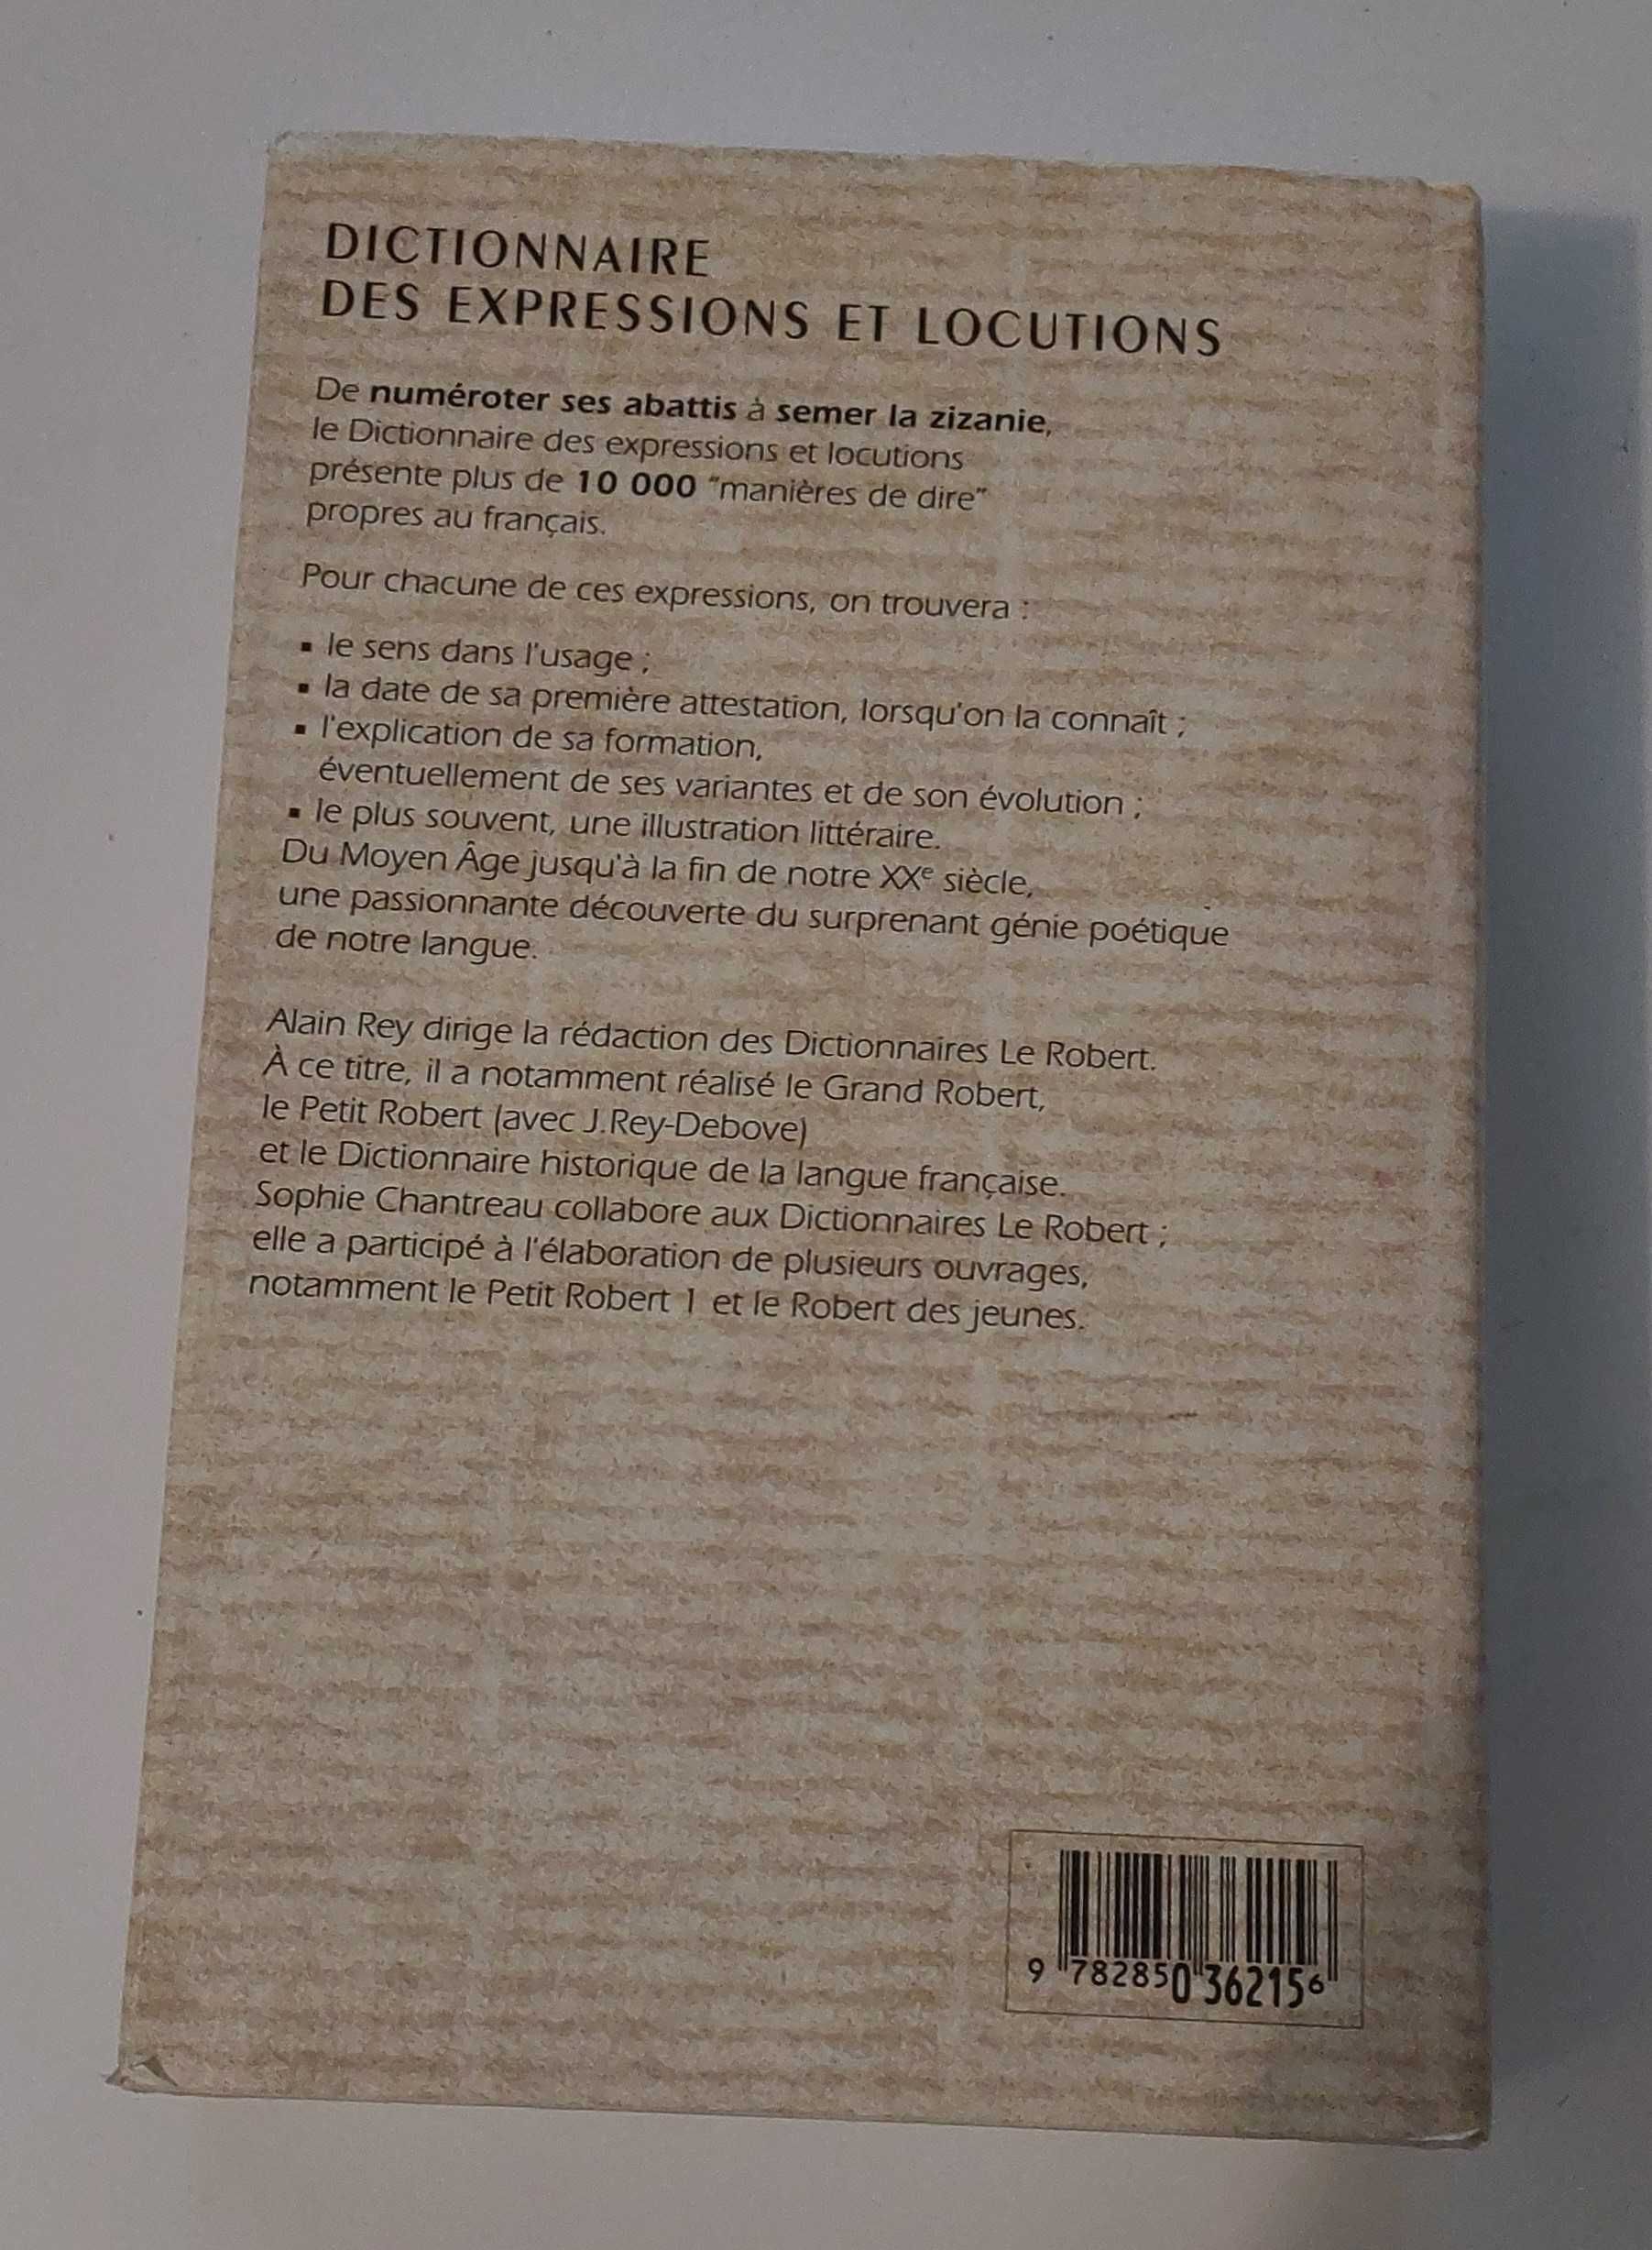 Słownik jęz fr wyrażeń i idiomów (dictionnaire des expressions..)